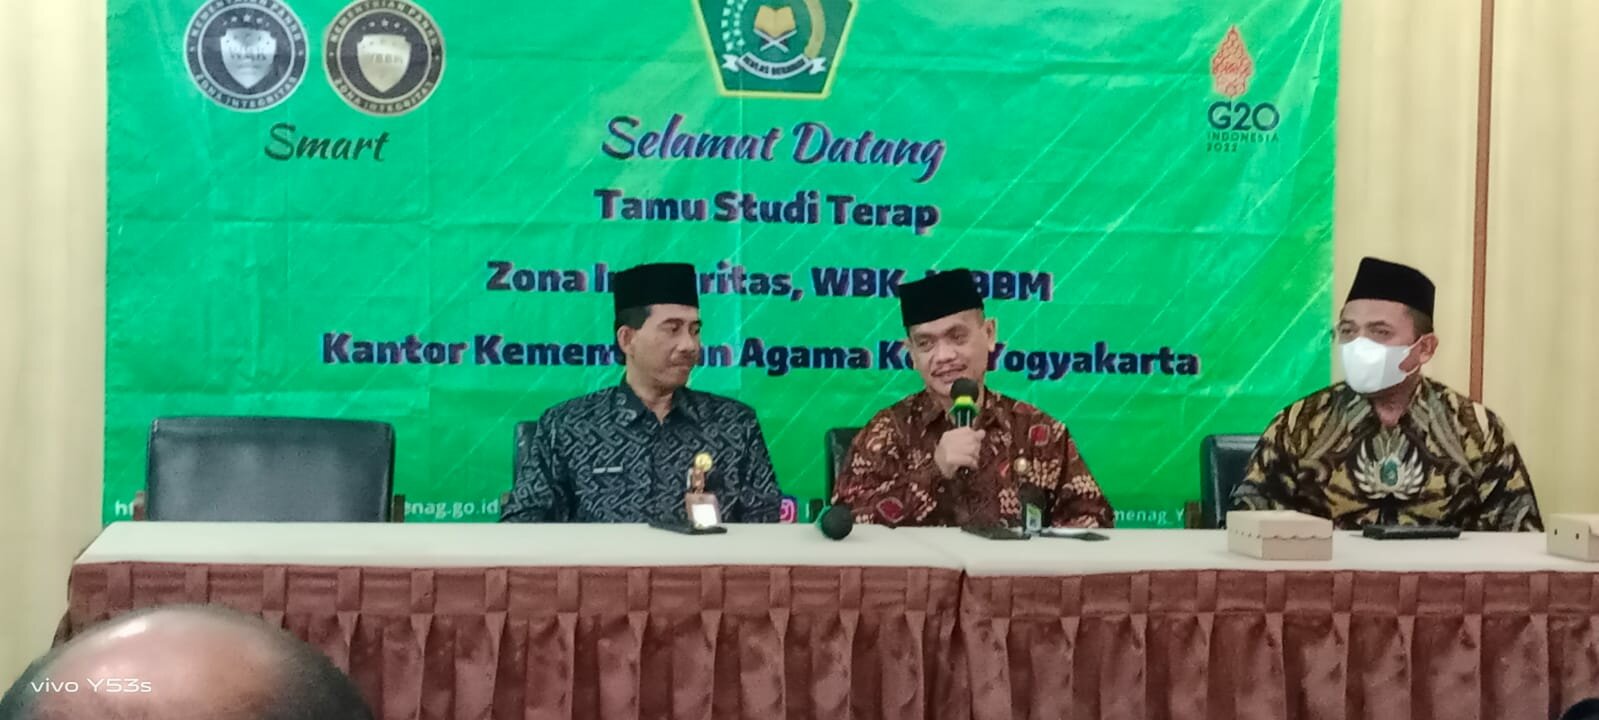 Study terap Zona Integritas menuju (WBK)/(WBBM) ke Kantor Kementerian Agama Kota Yogyakarta